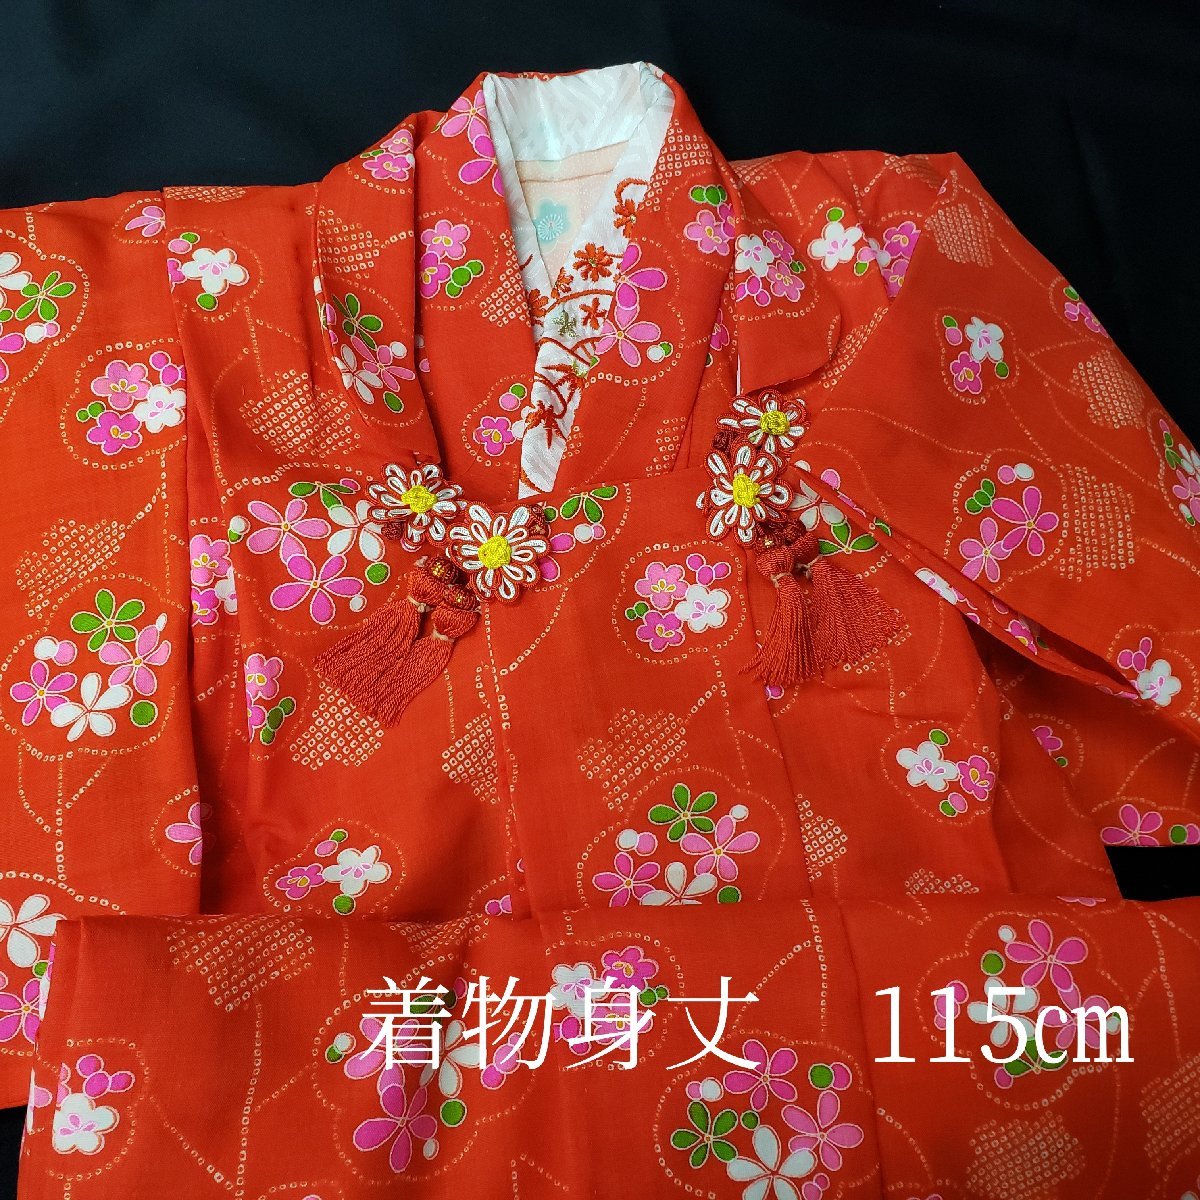  женщина . кимоно кимоно японский костюм "Семь, пять, три" длина 115cm. ткань пальто длинное нижнее кимоно вышивка есть Новый год праздник надеты ежегодные мероприятия девочка костюм [120n262]